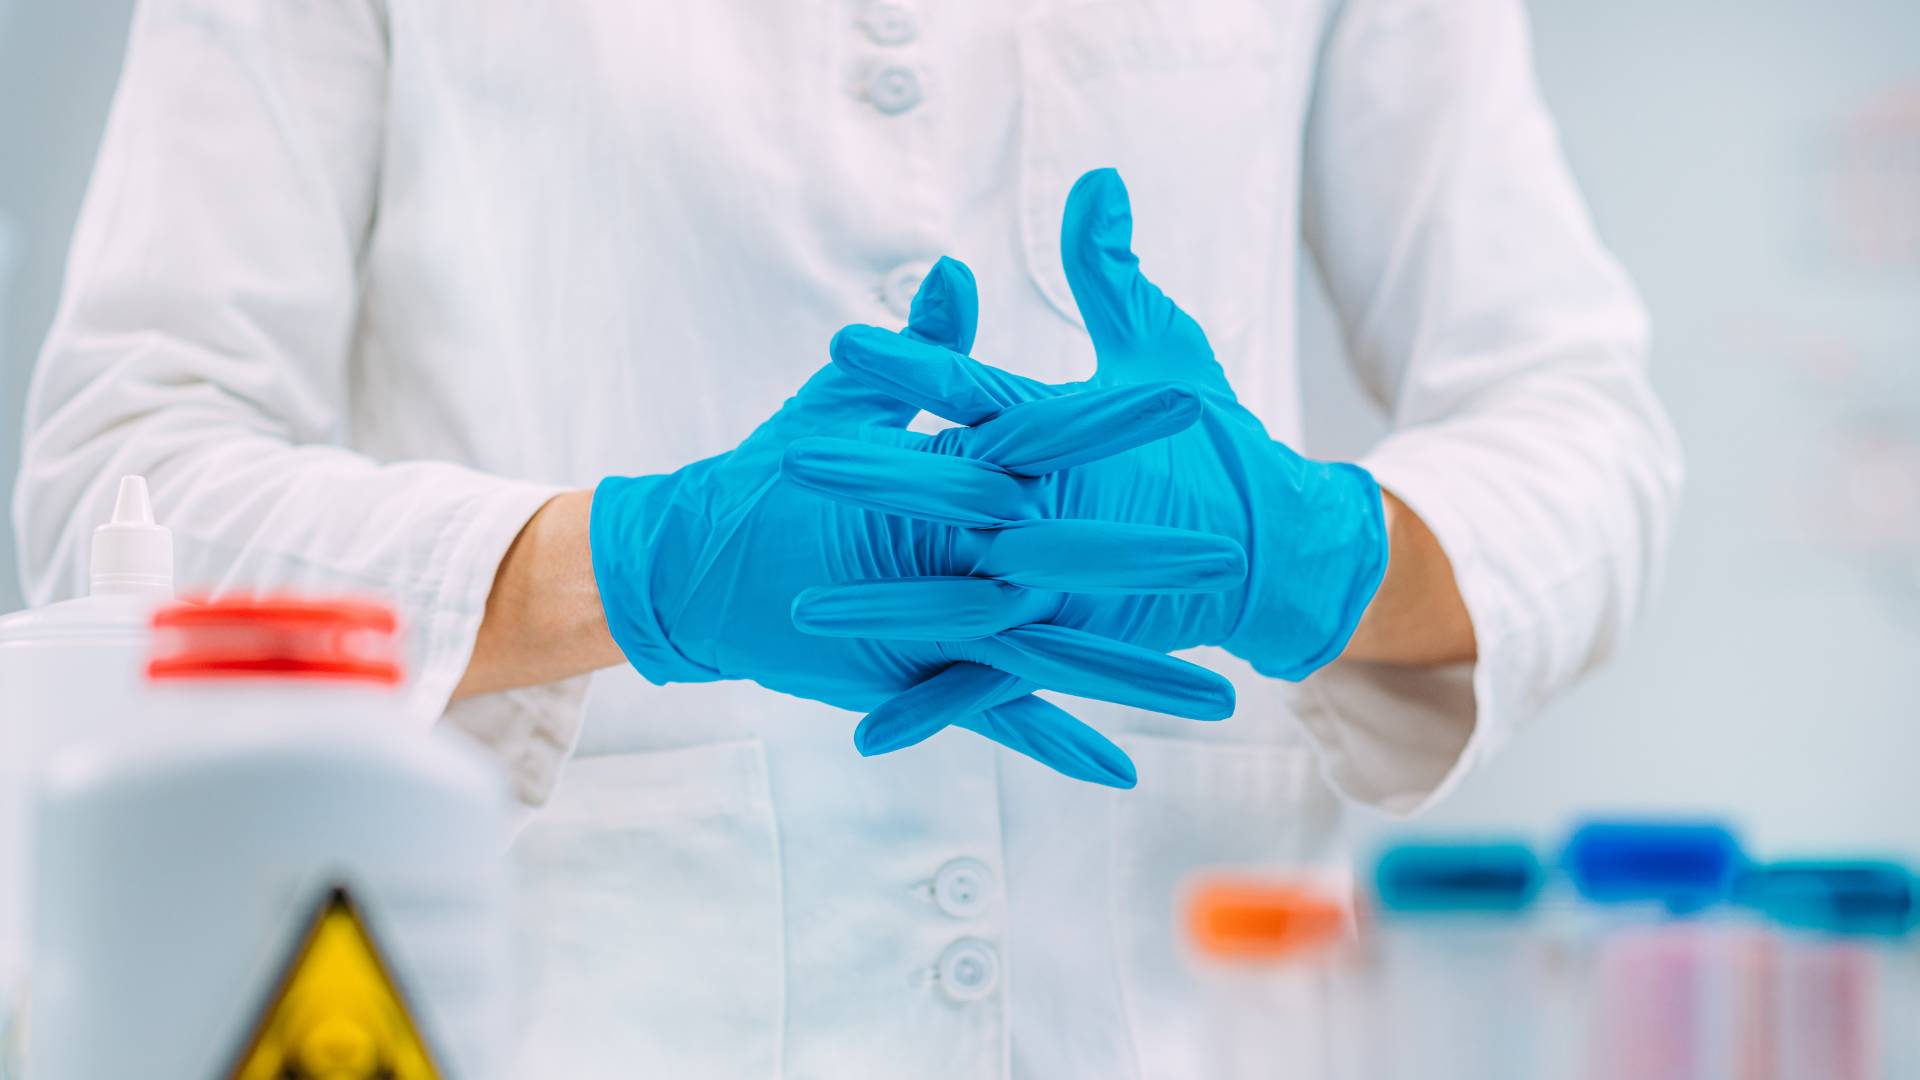 Persona in laboratorio chimico con camice e guanti in nitrile